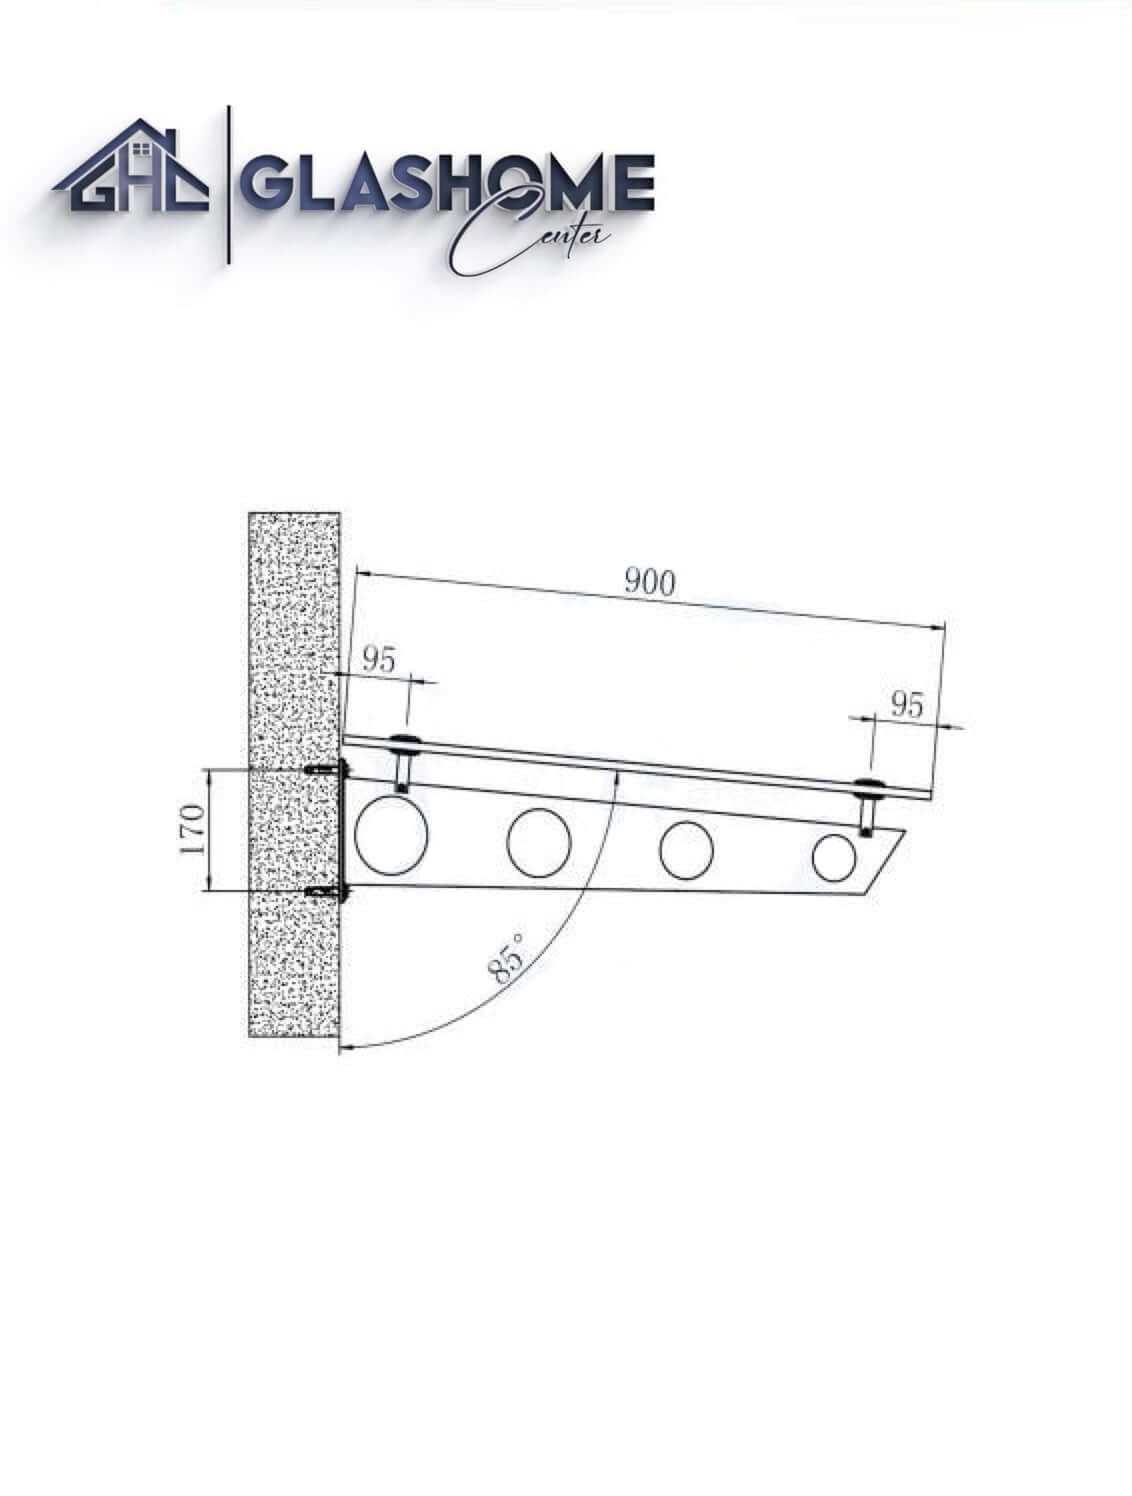 GlasHomeCenter - Glasvordach - Grauglas - 200x90cm - 13,1mm VSG - incl. 3 Edelstahlhalterungen variante "Stoccolma"